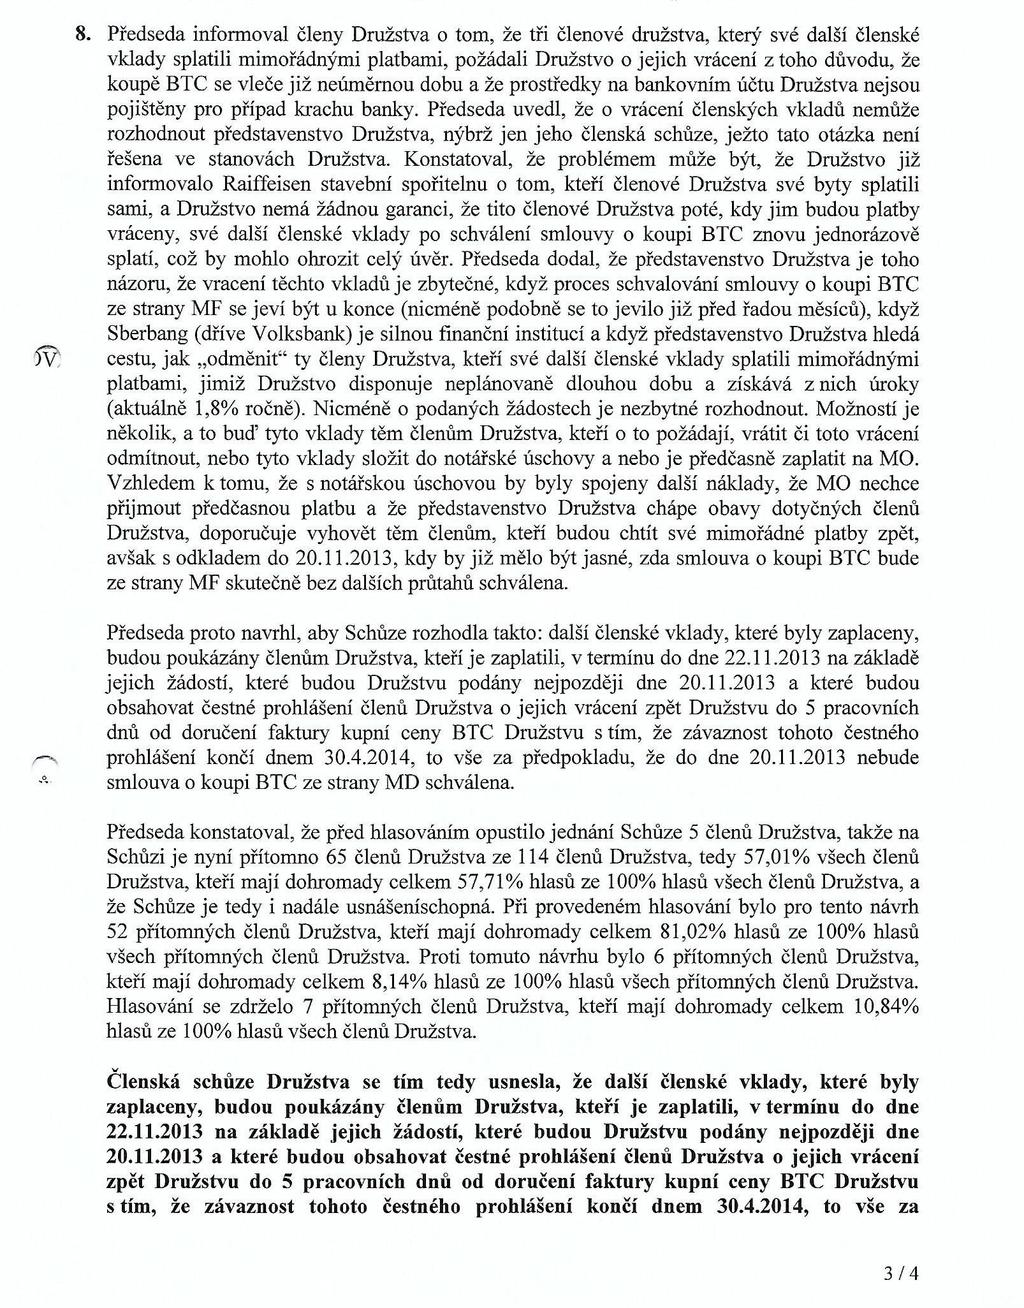 Příloha k otevřenému dopisu odstupujícího předsedy Na dalším jednání ČS dne 7. 11.